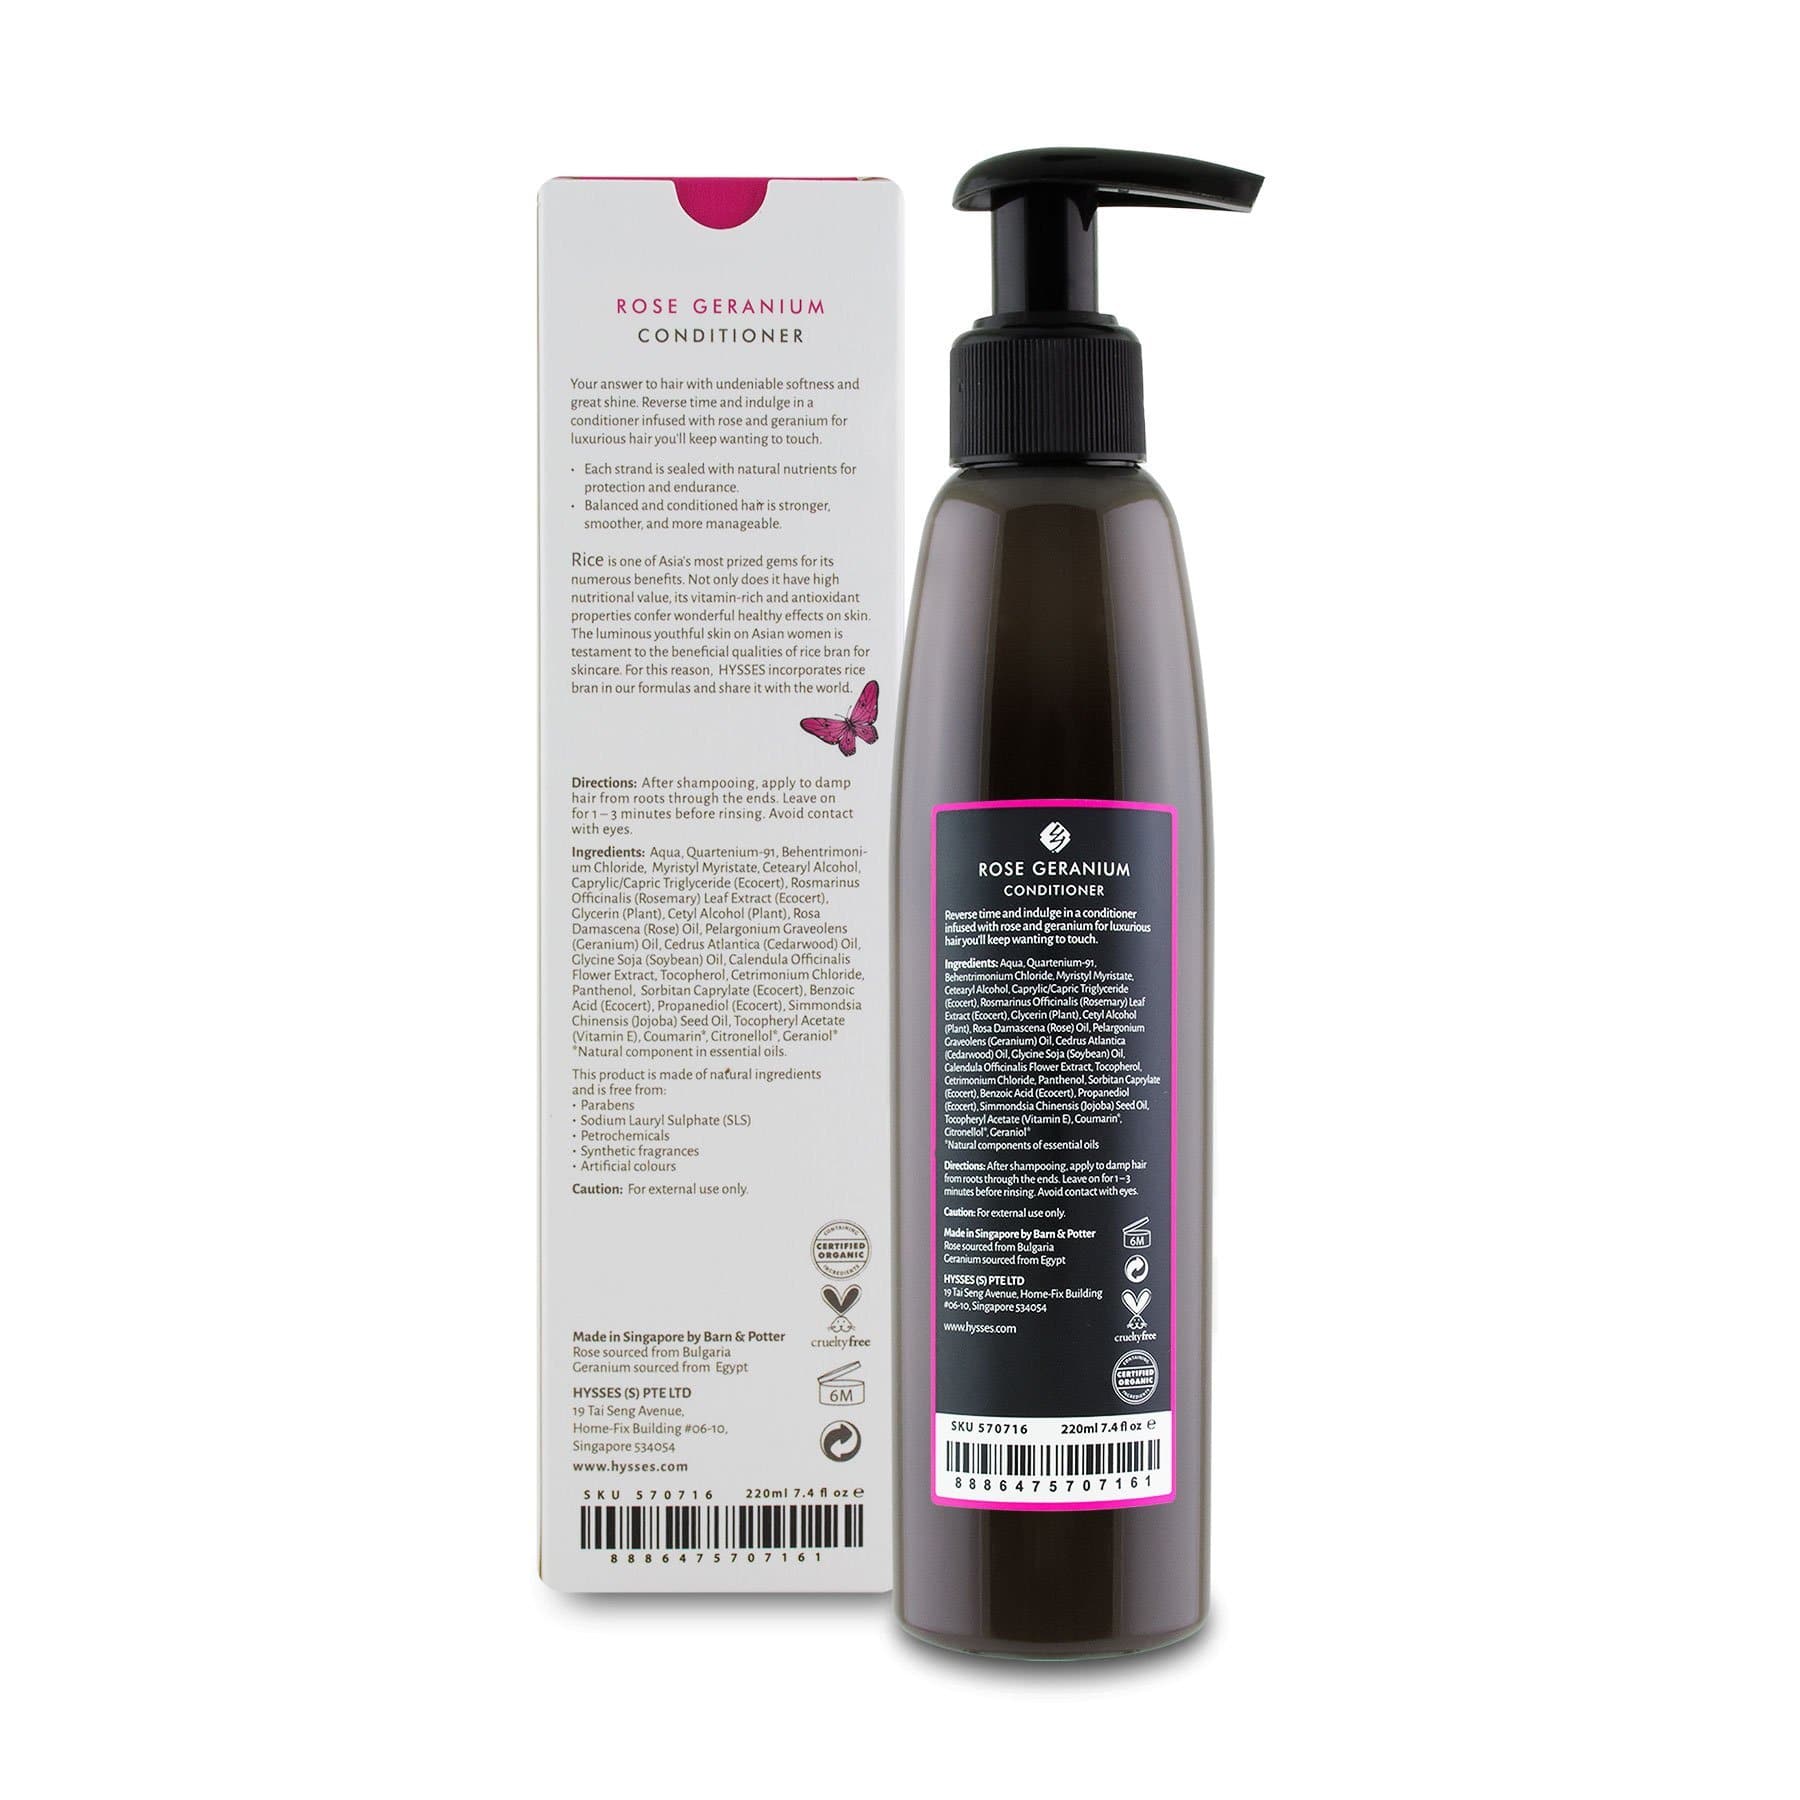 Hysses Hair Care Conditioner Rose Geranium, 220ml